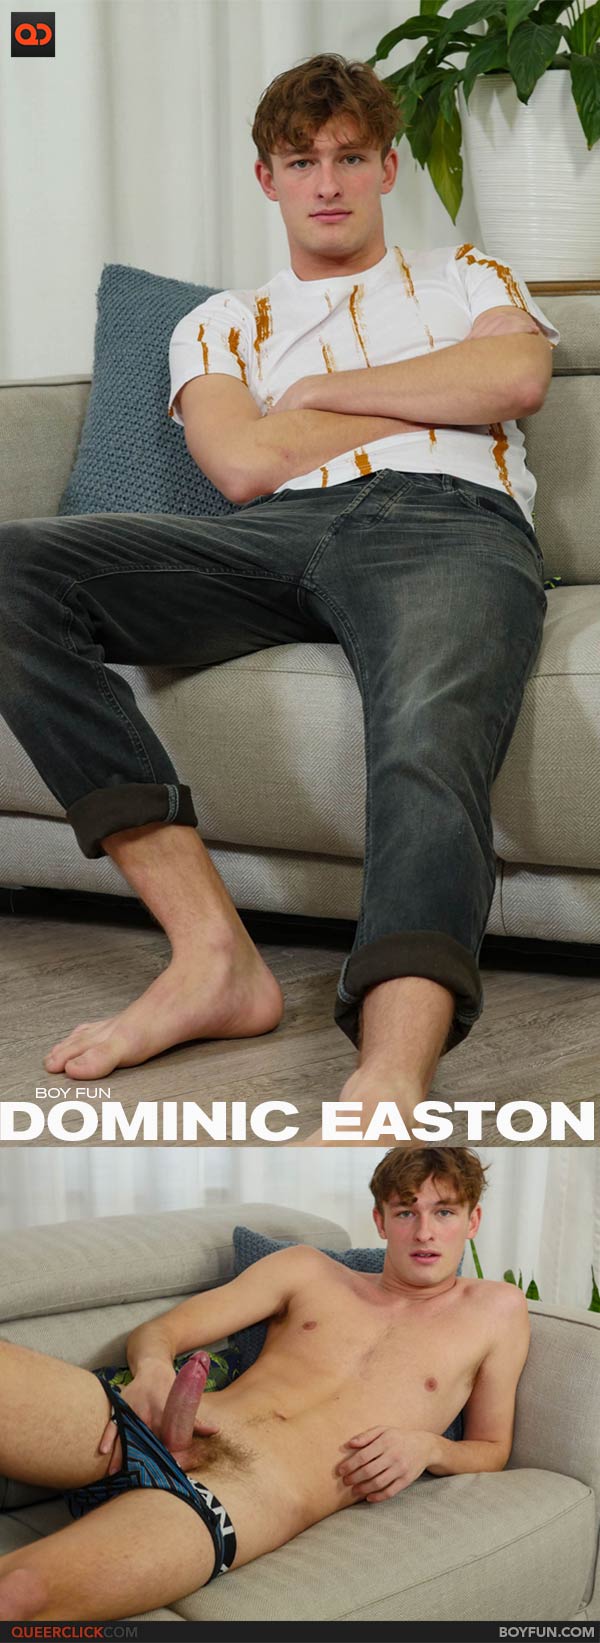 Dominic Easton nude photos